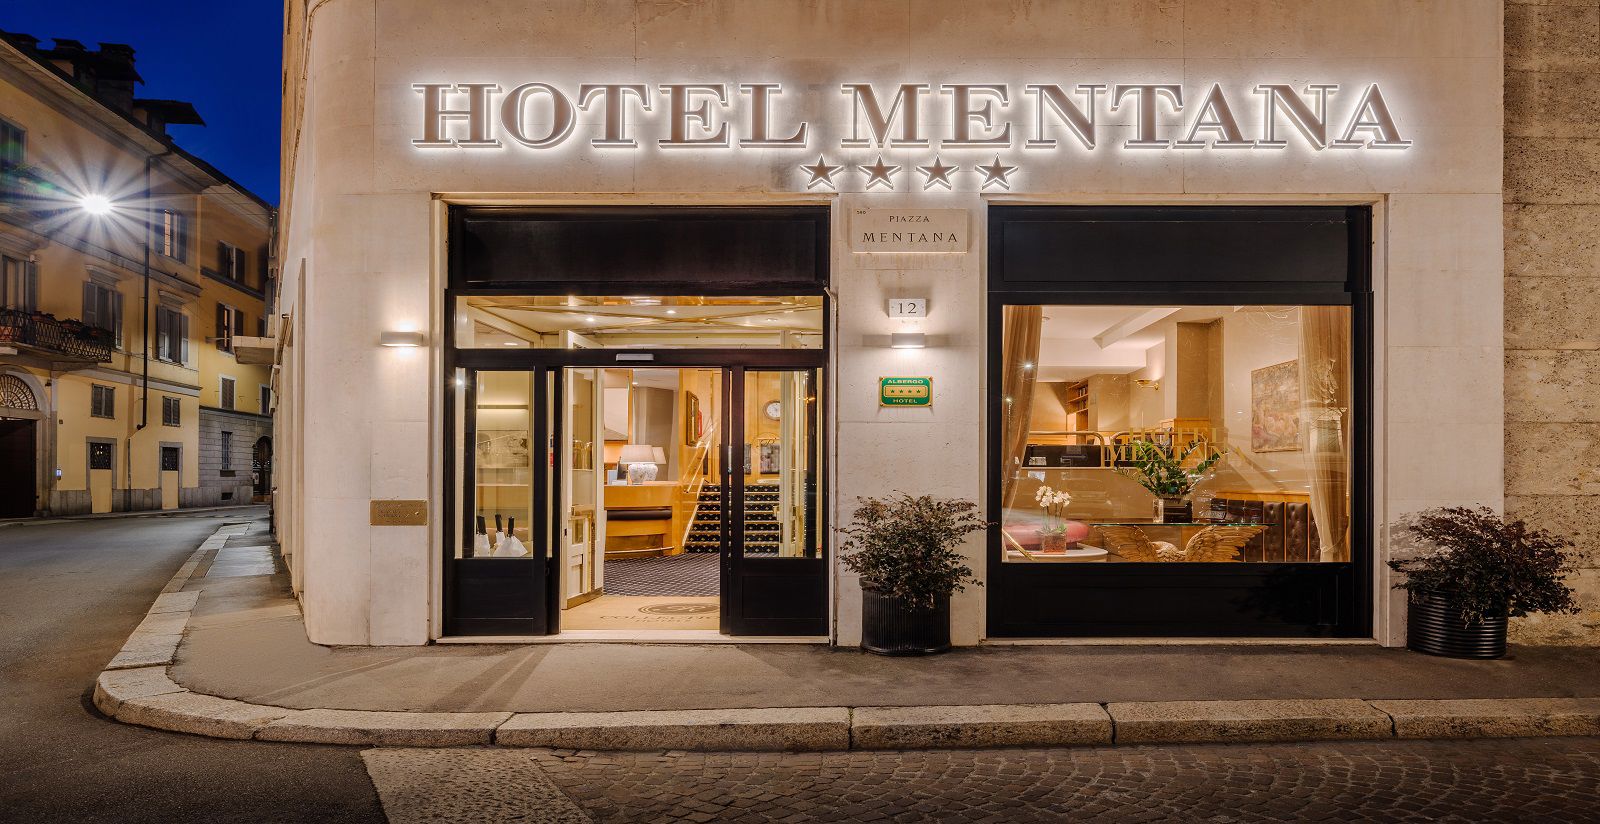 Hotel Mentana - Hotel Mentana Milano 5